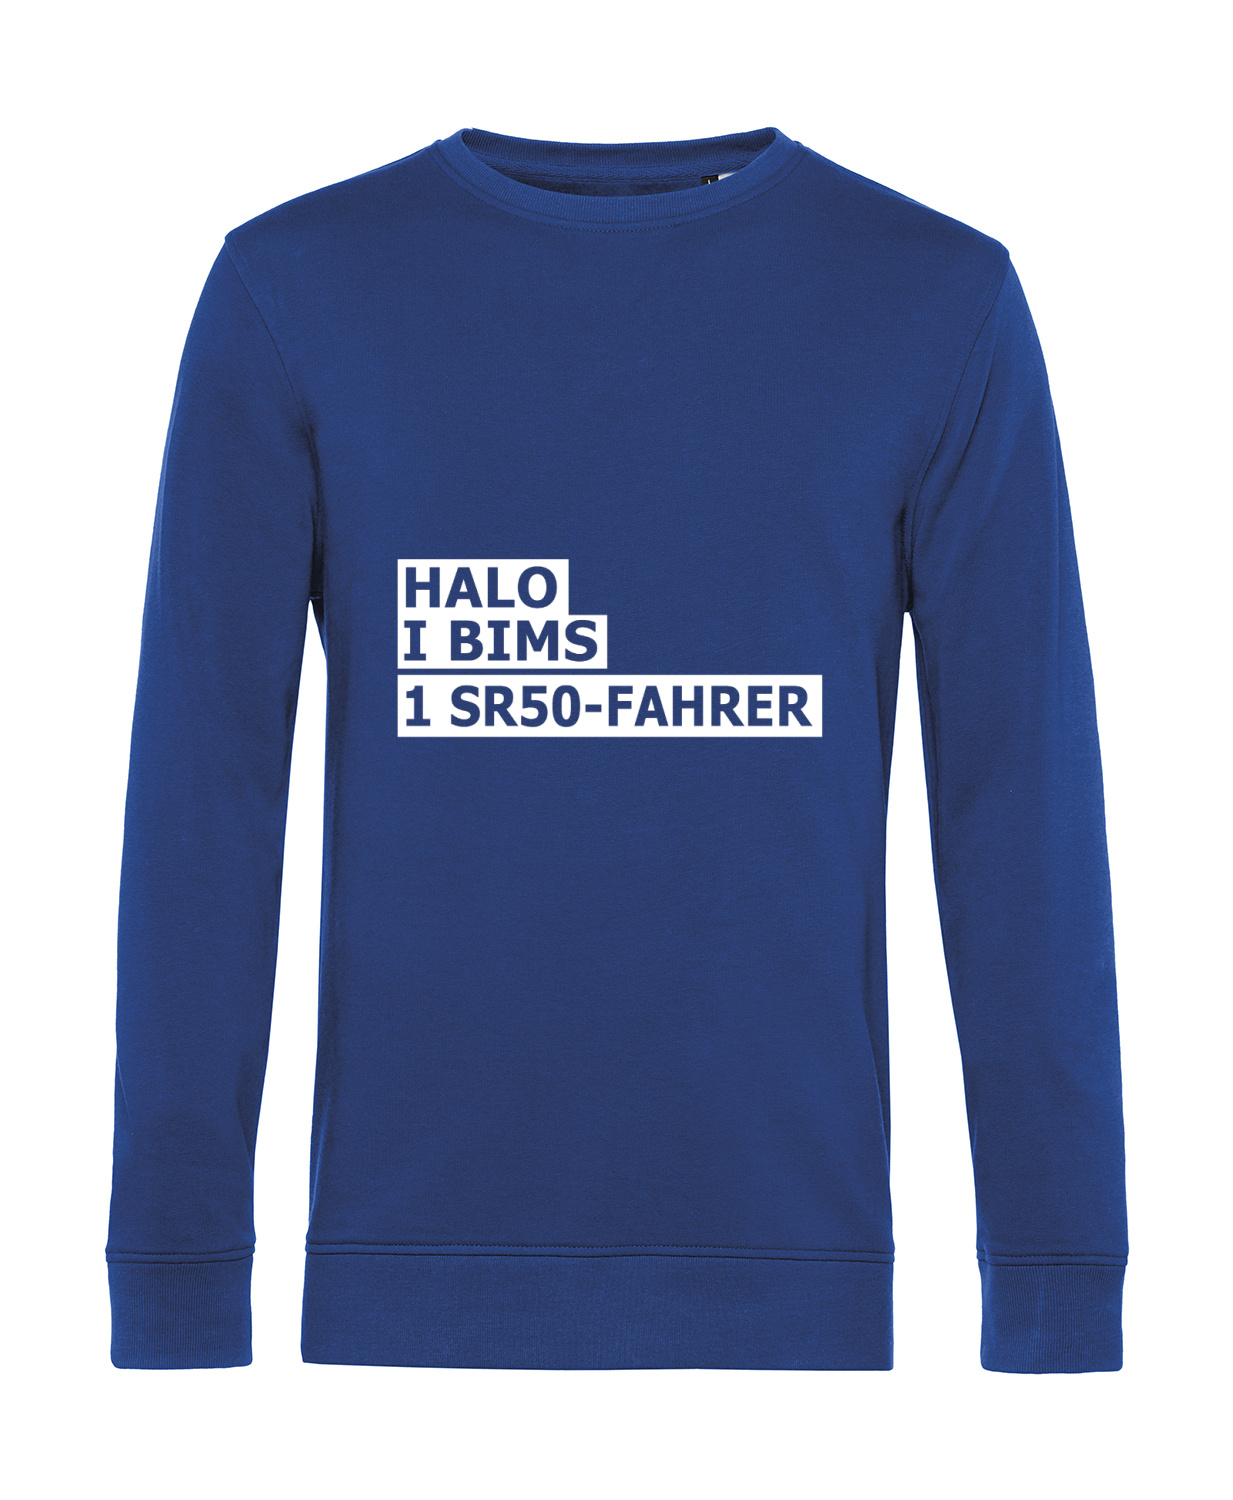 Nachhaltiges Sweatshirt Herren 2Takter - Halo I bims 1 SR50-Fahrer